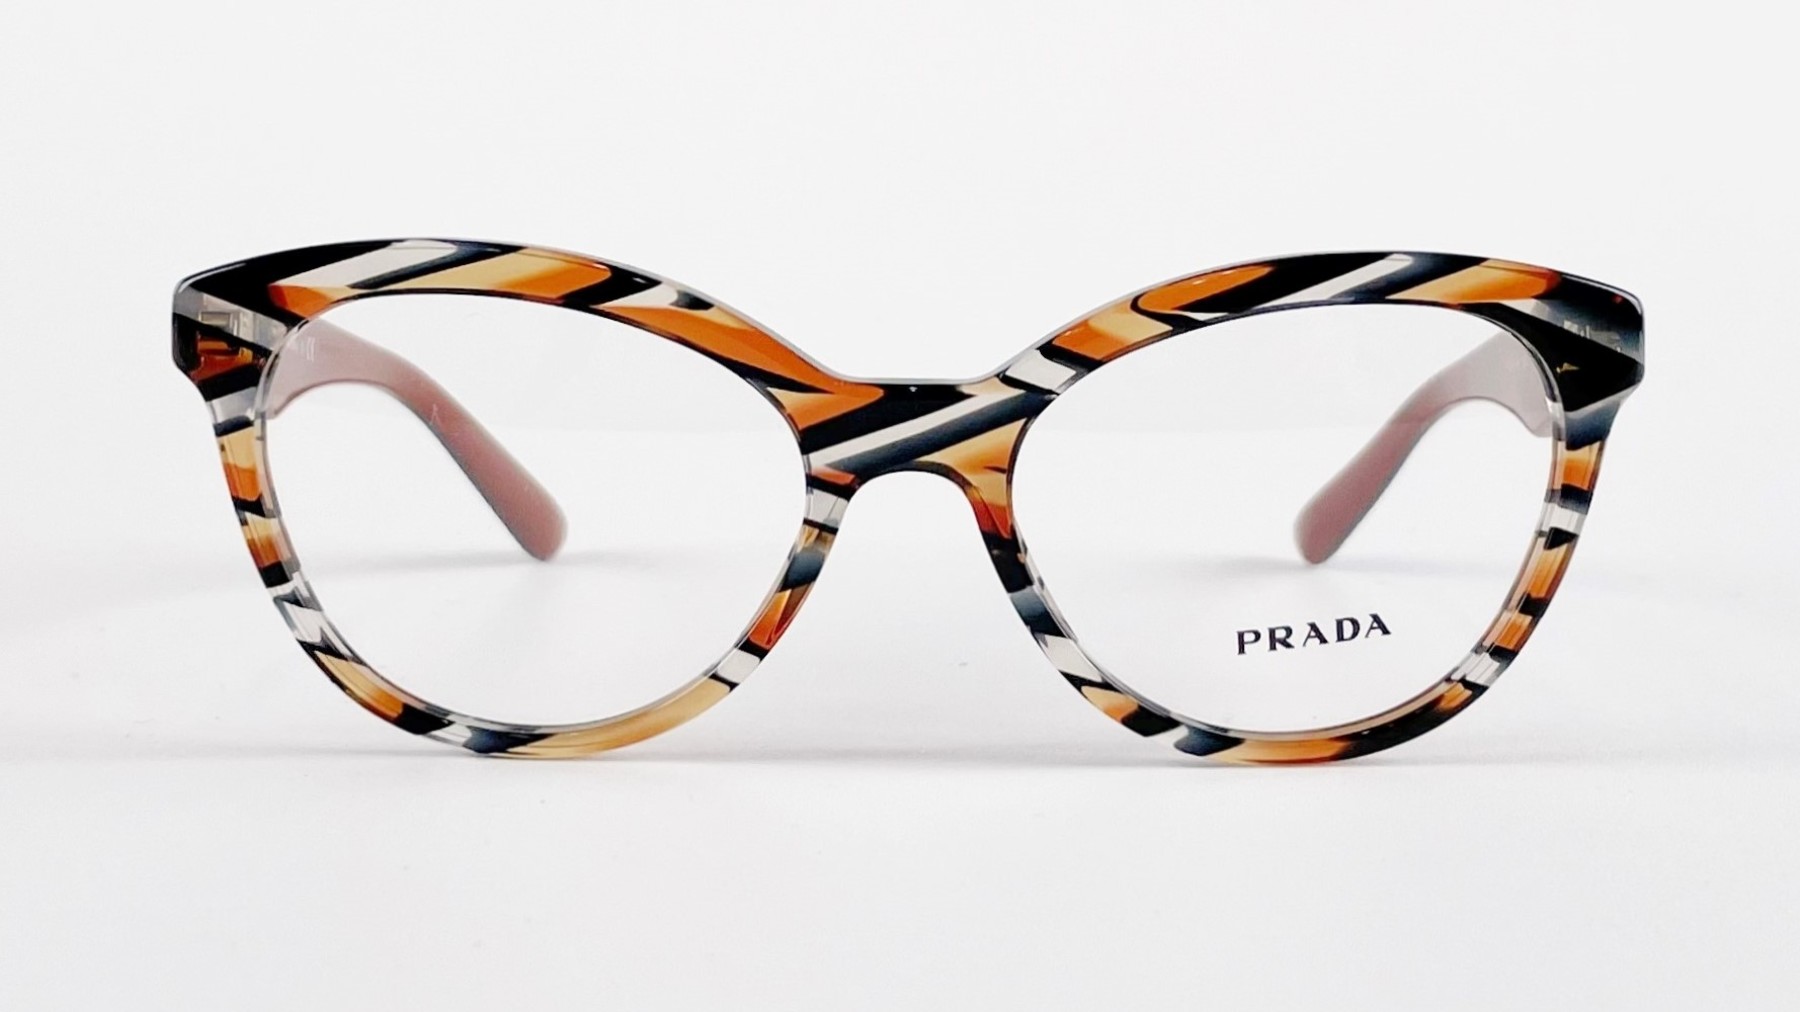 PRADA VPR 11R, Korean glasses, sunglasses, eyeglasses, glasses